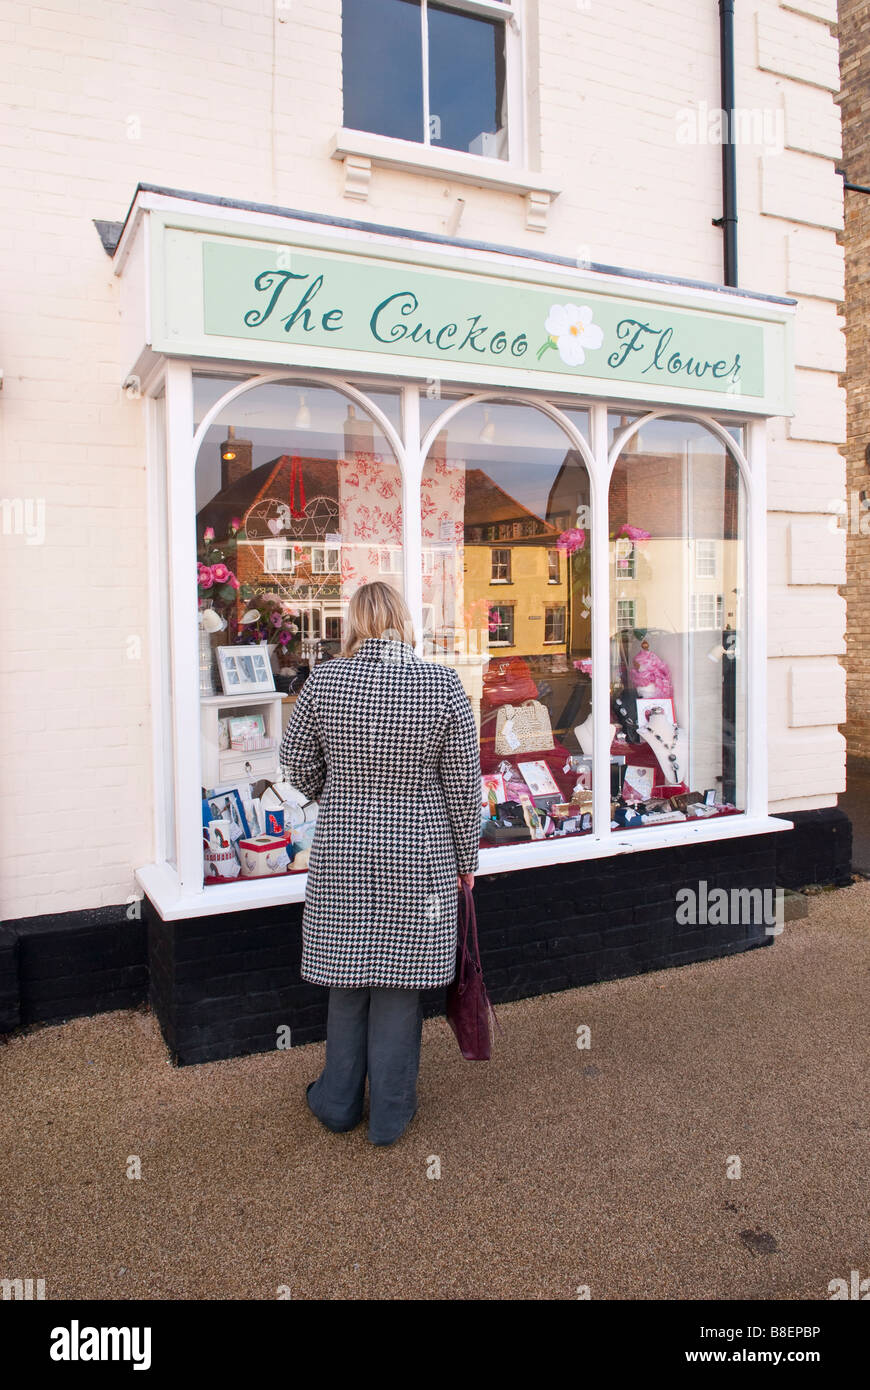 Il cuculo negozio di fiori negozio vendita doni ecc in Long Melford,Suffolk, Regno Unito Foto Stock